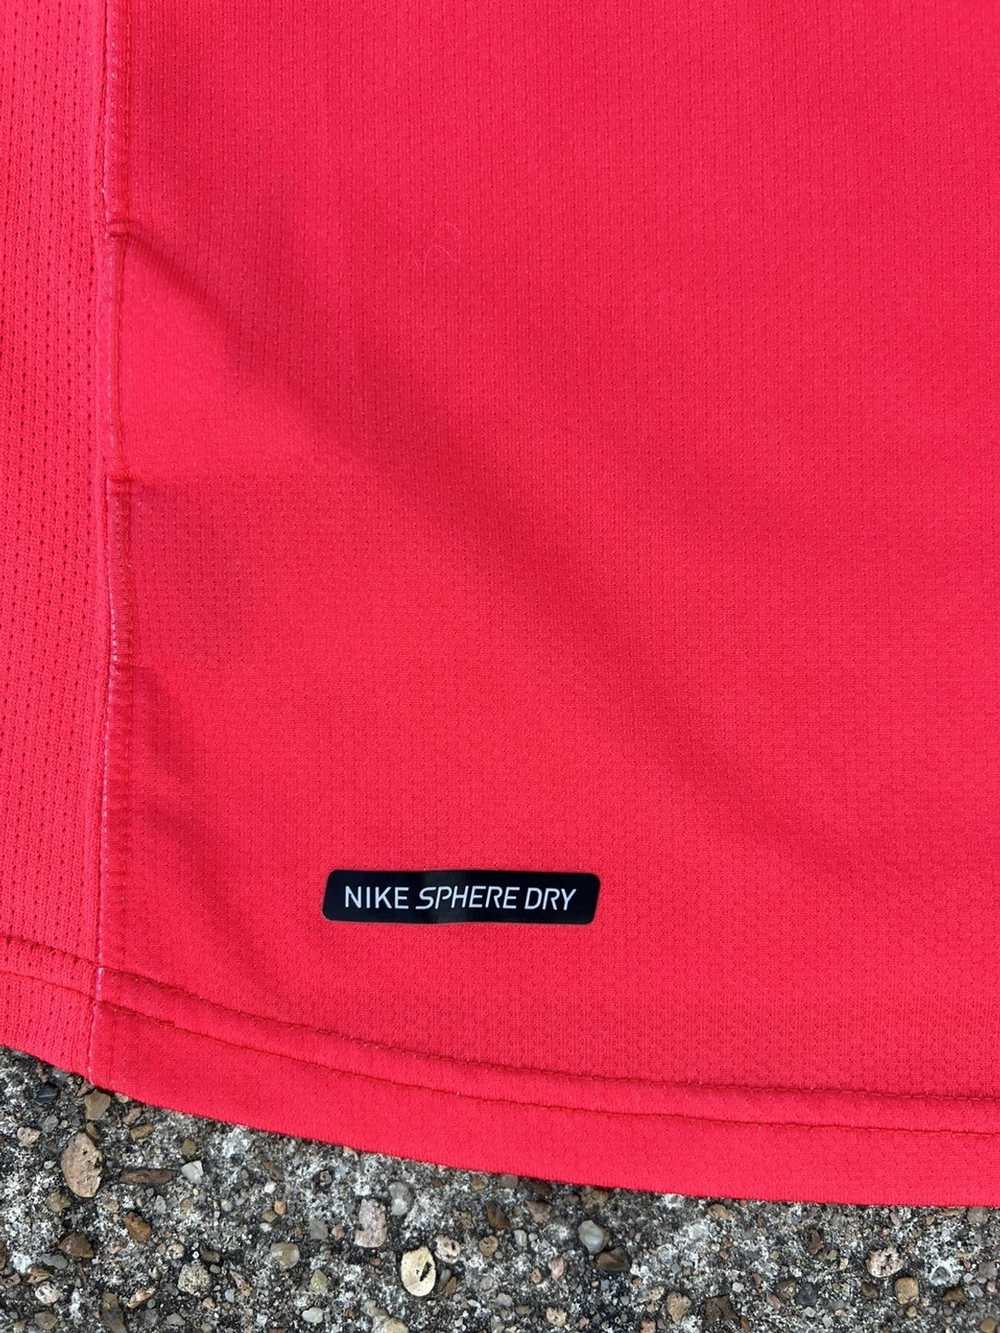 Nike × Soccer Jersey × Vintage Nike Vintage Socce… - image 10